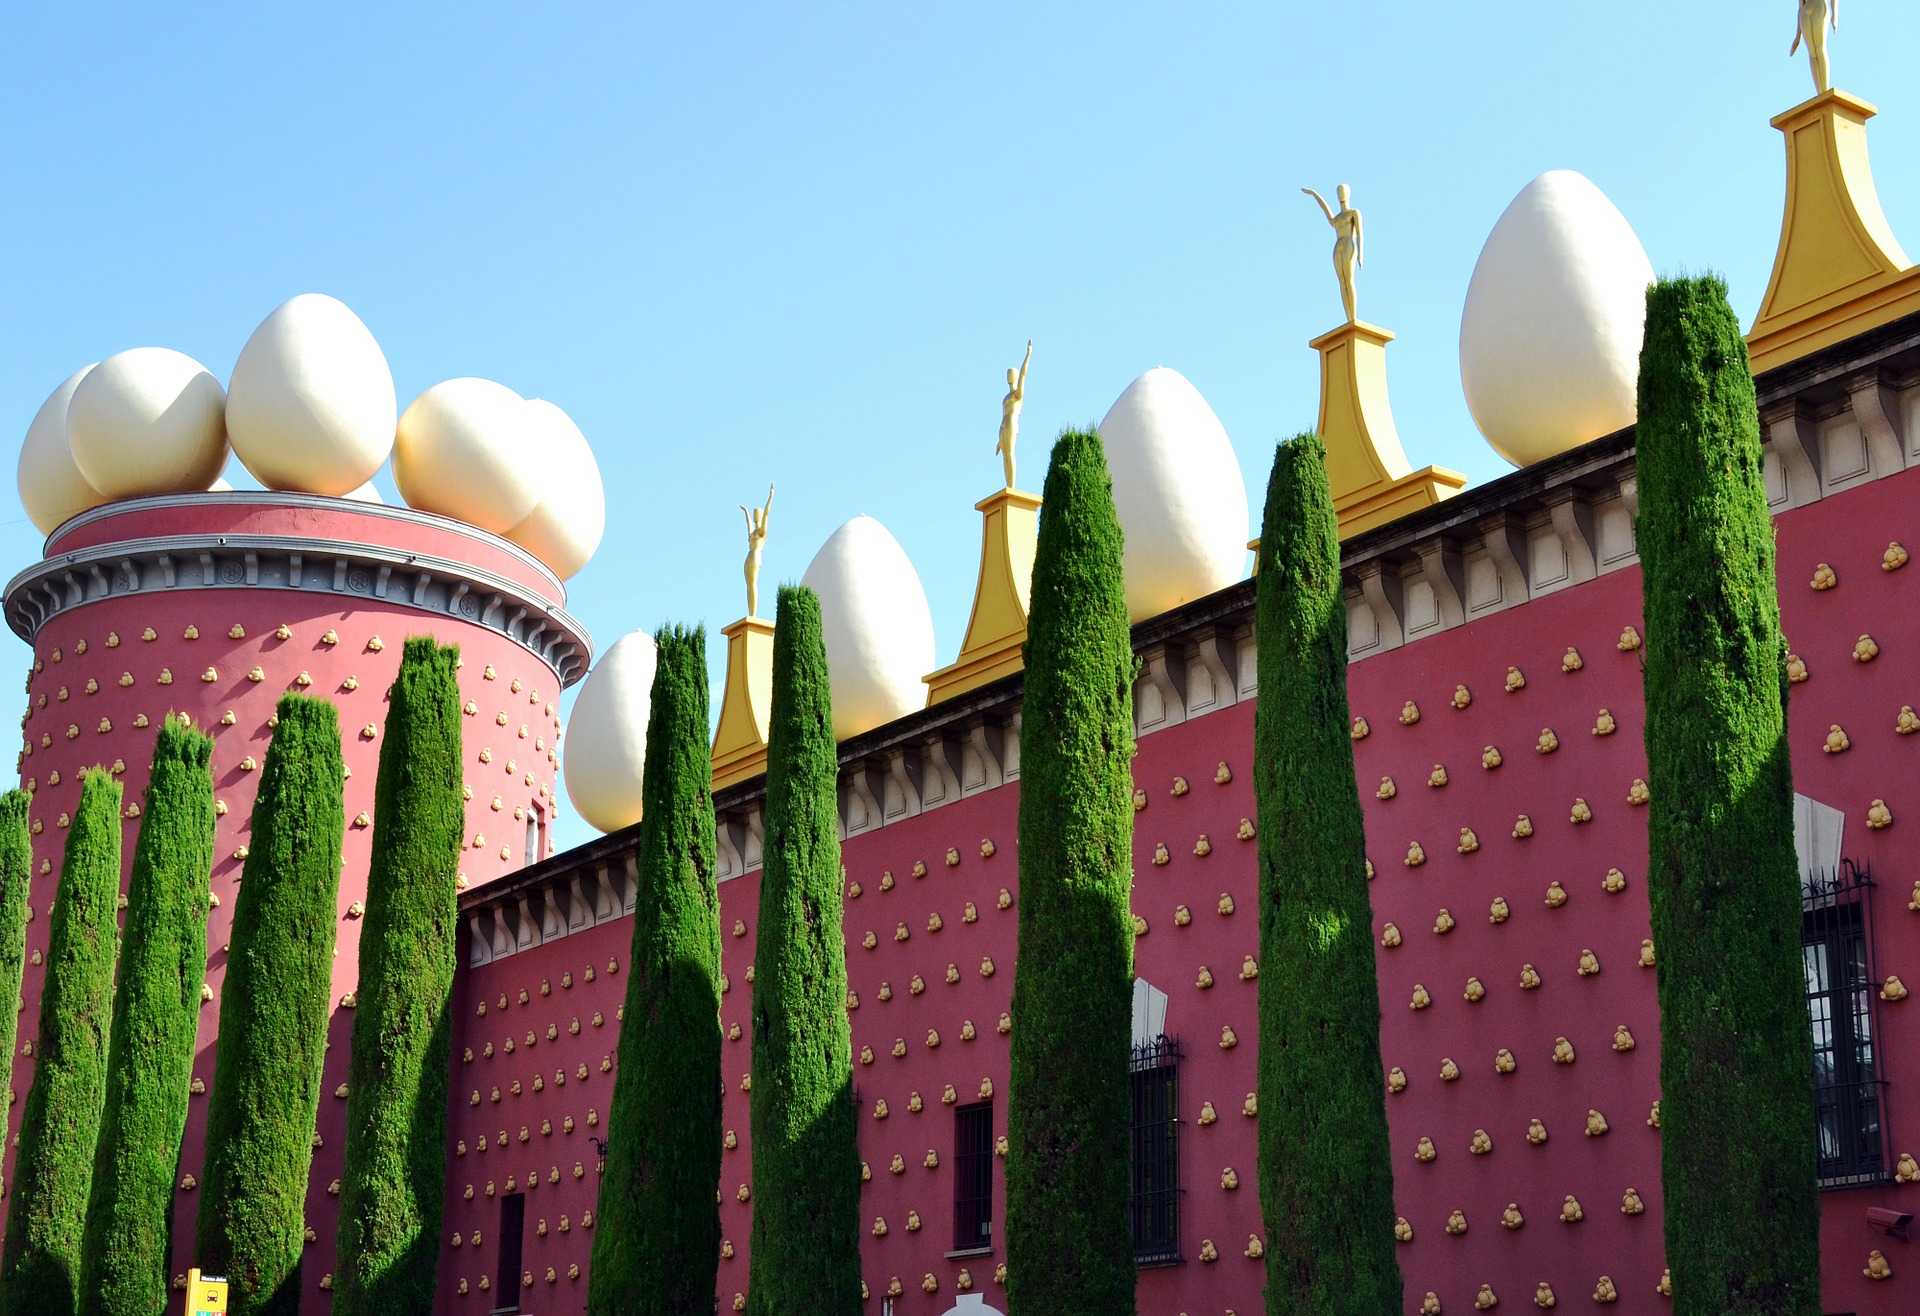 מוזיאון דאלי בברצלונה 2022 - כרטיסים, שעות פתיחה ועקיפת תורים